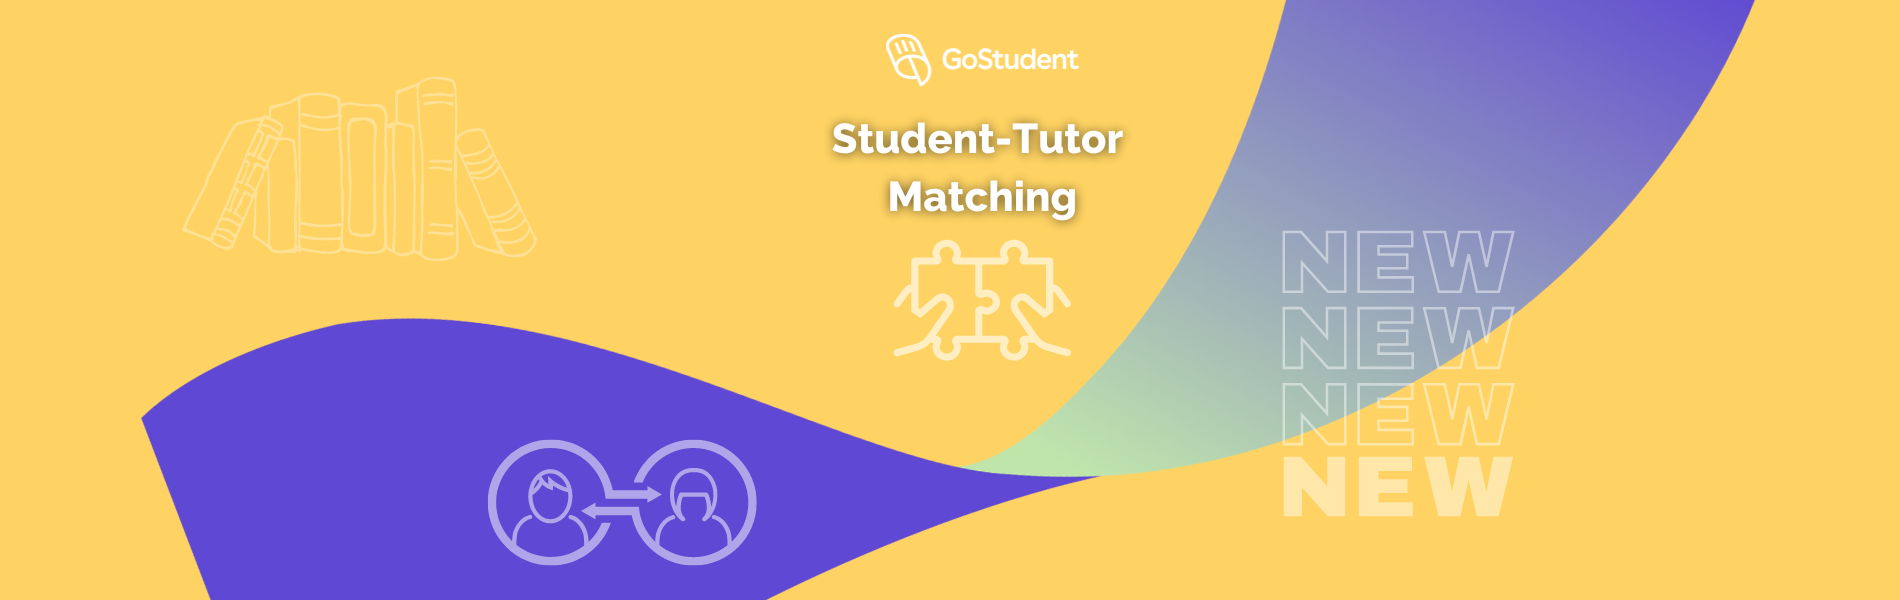 Neue Funktion: Student-Tutor Matching ist da!